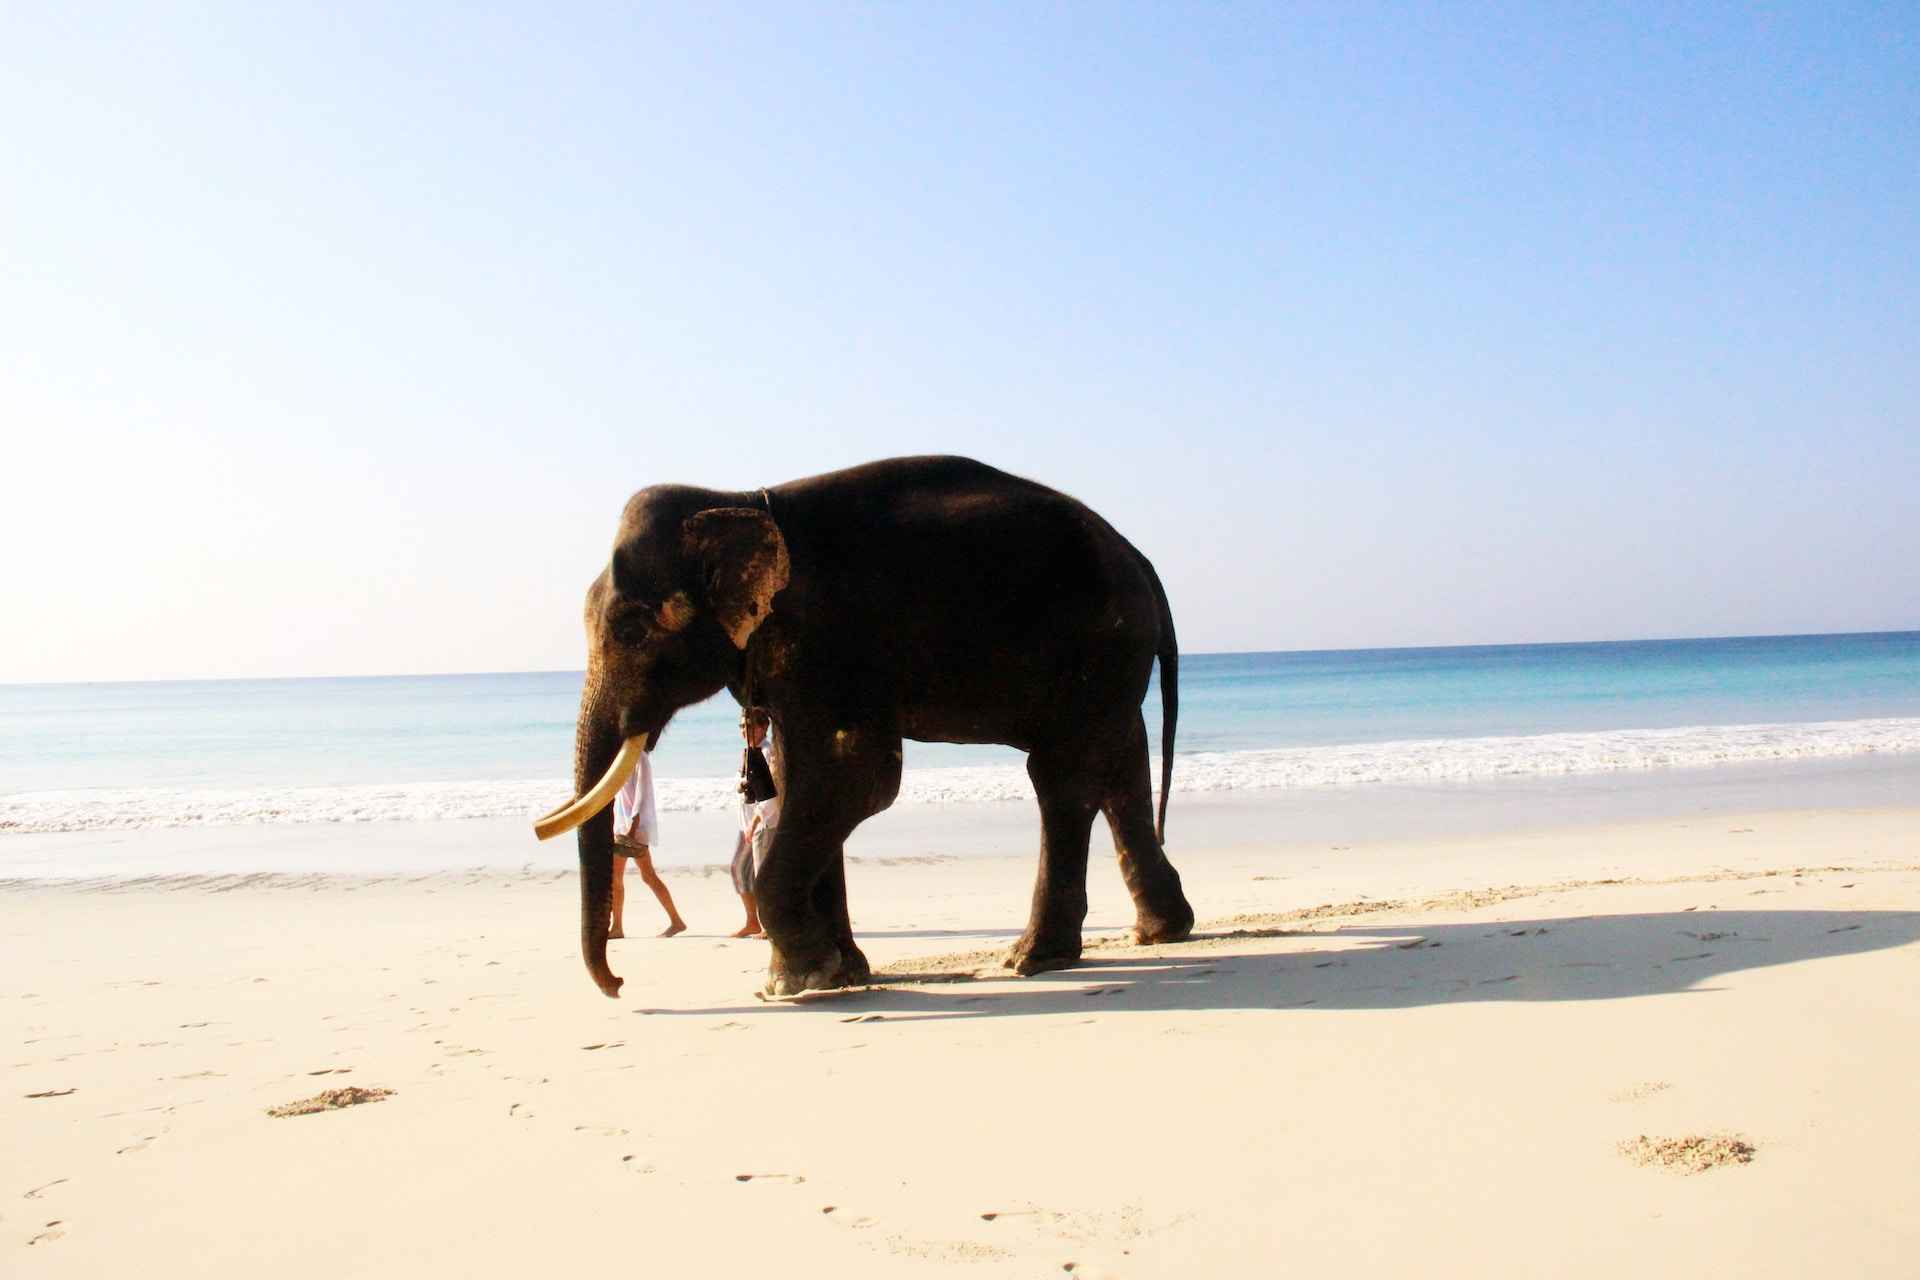 elephant on beach